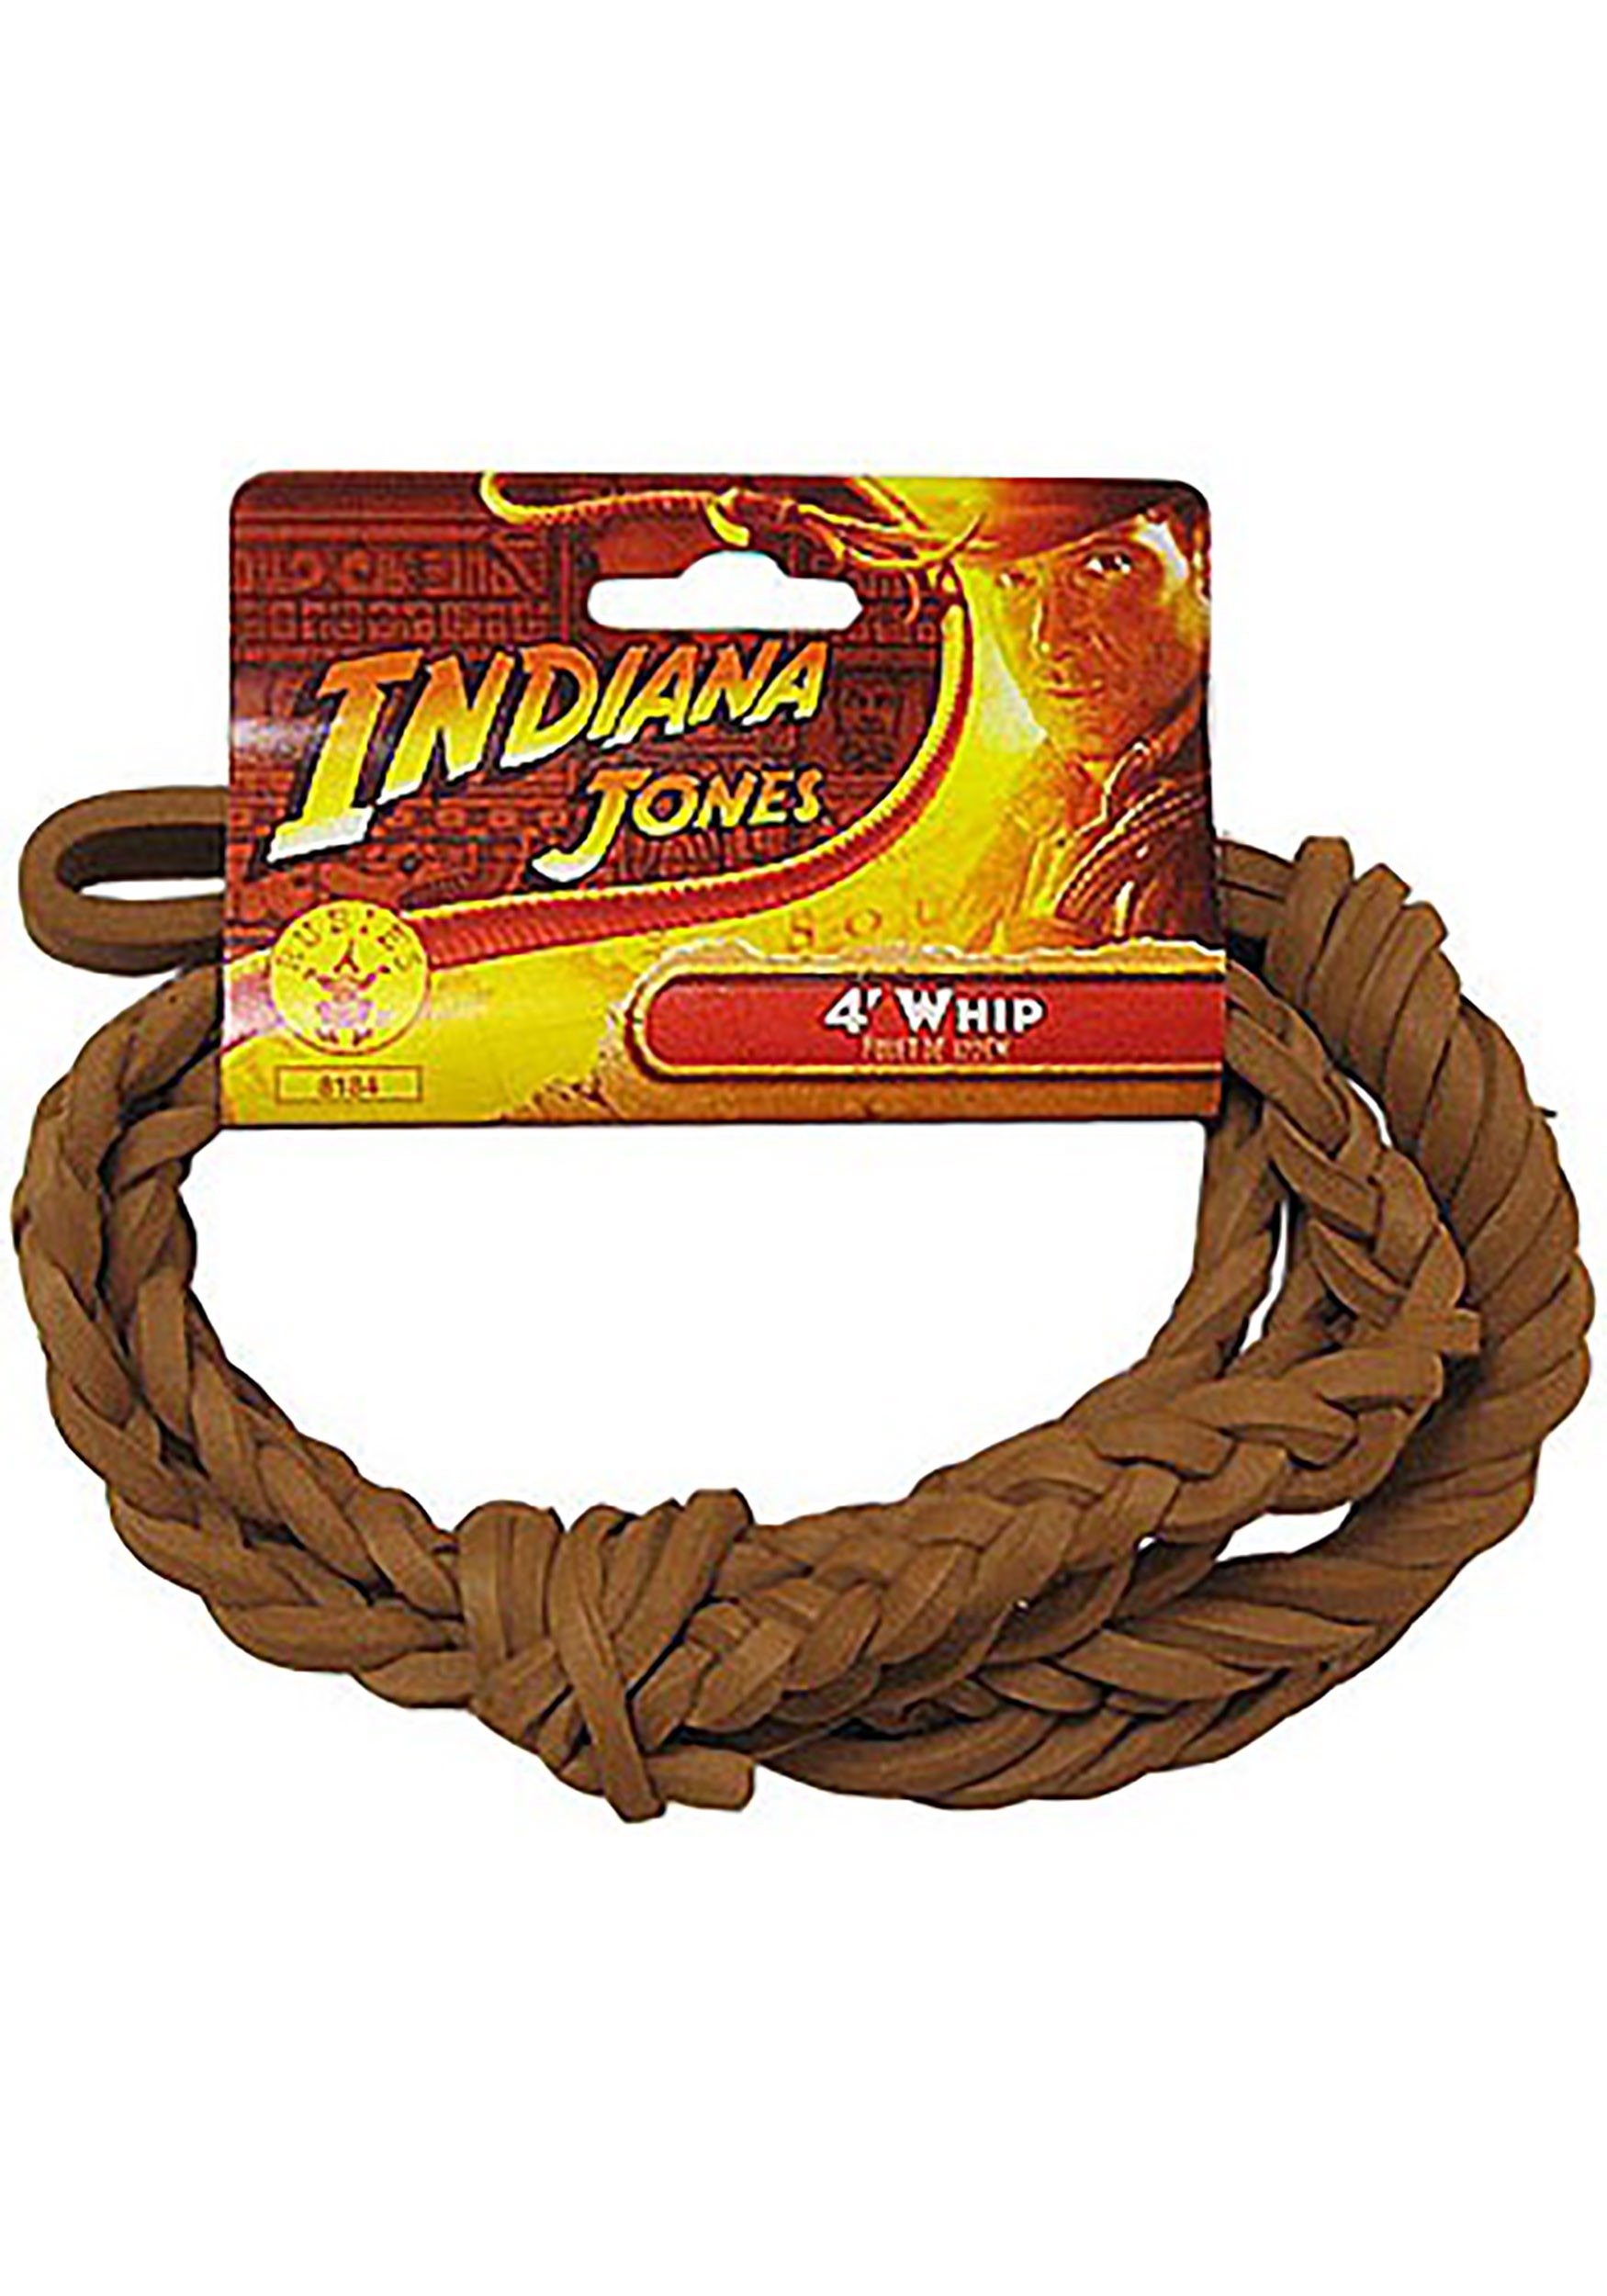 Indiana Jones Toy: 4' Whip